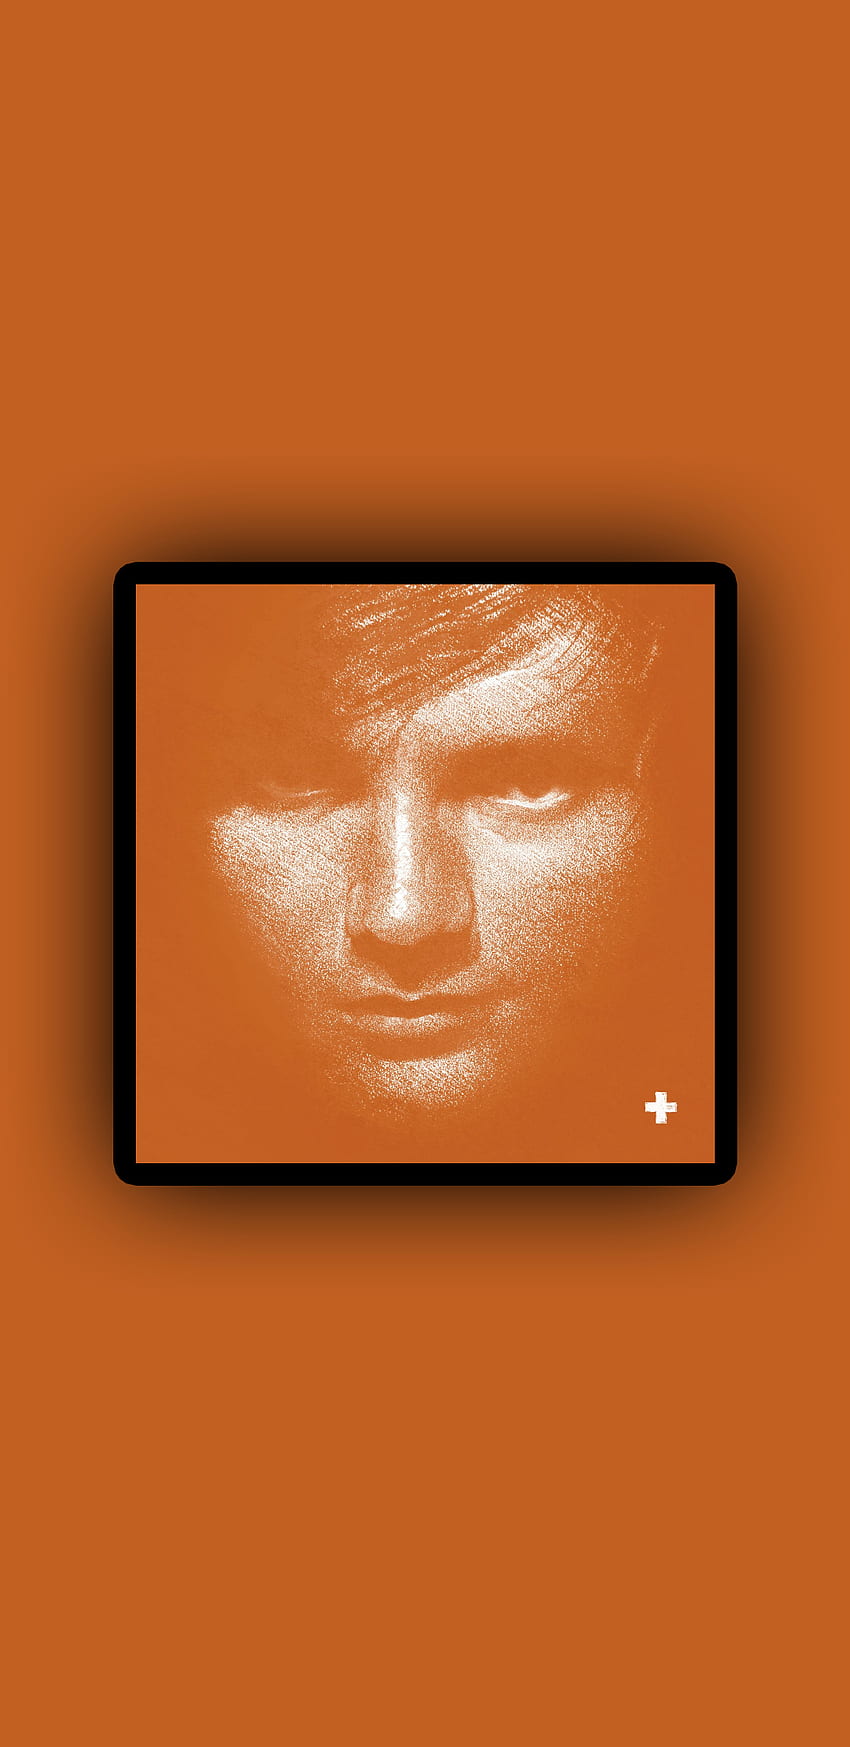 Ed Sheeran +, 팝, Ed Sheeran, 가수, 음악, UK, 앨범, Plus, Orange HD 전화 배경 화면